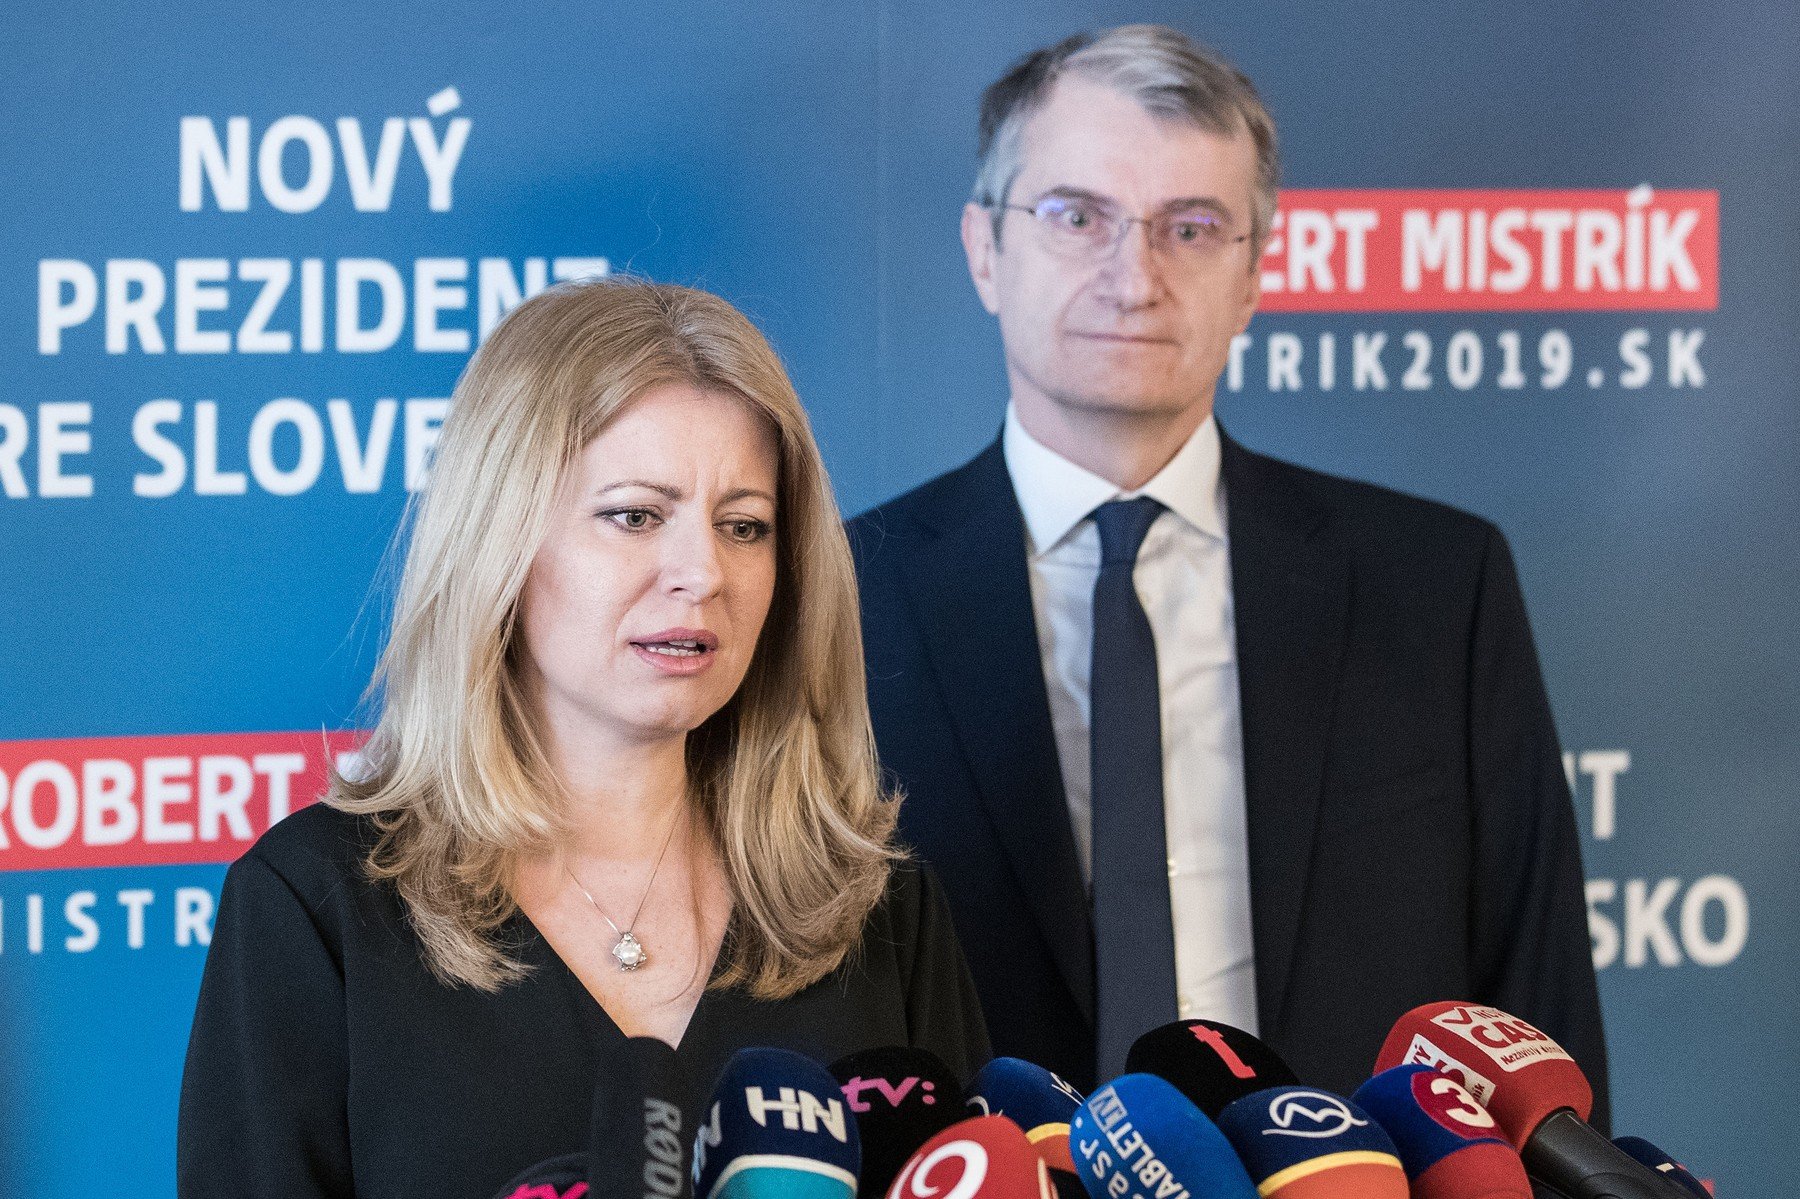 Robert Mistrík odstoupil z prezidentských voleb a zároveň podpořil Zuzanu Čaputovou